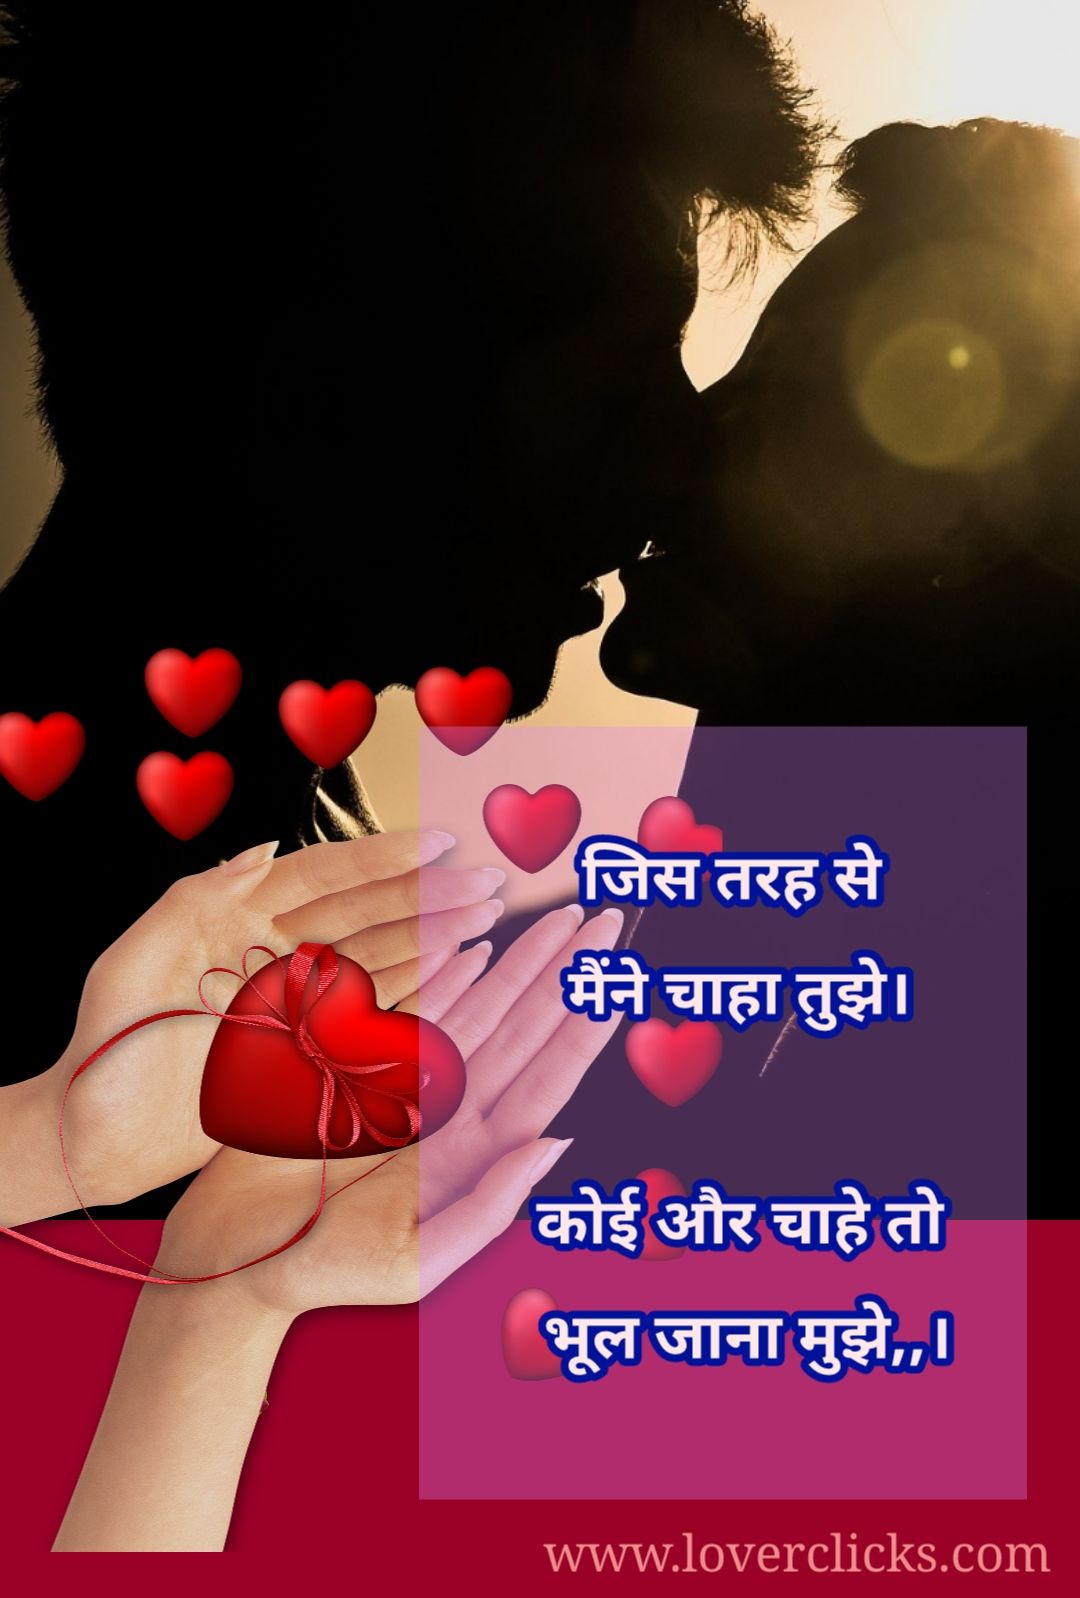 New Hindi Love shayari and images – Hindi Shayari Love Shayari Love Quotes Hd Images